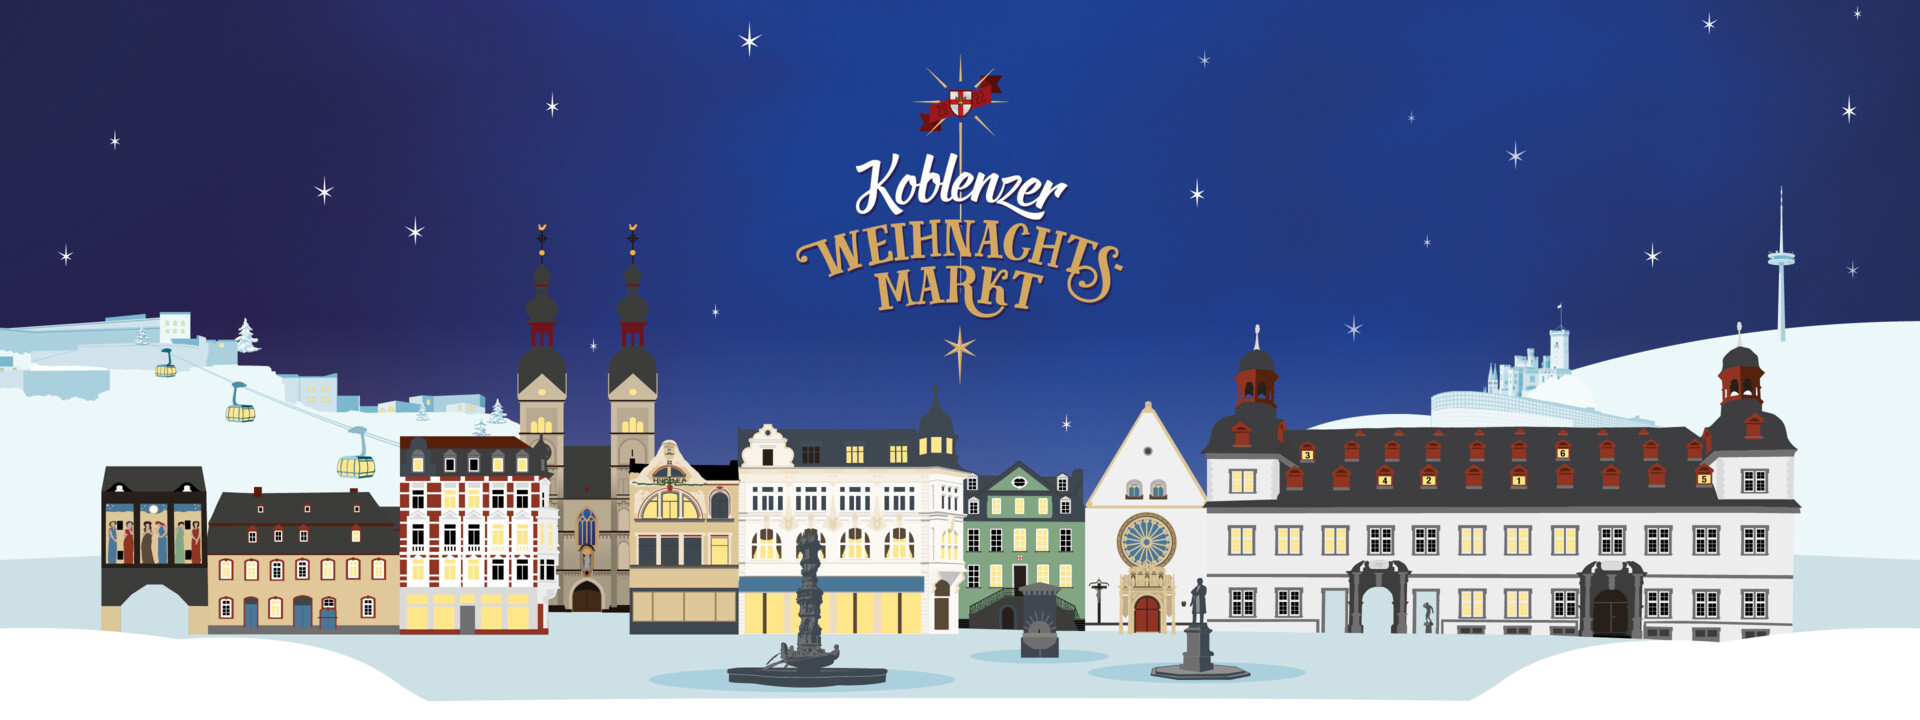 Grafik zum Koblenzer Weihnachtsmarkt mit Darstellung der Altstadt und diversen Sehenswürdigkeiten in Koblenz ©Koblenz-Touristik GmbH